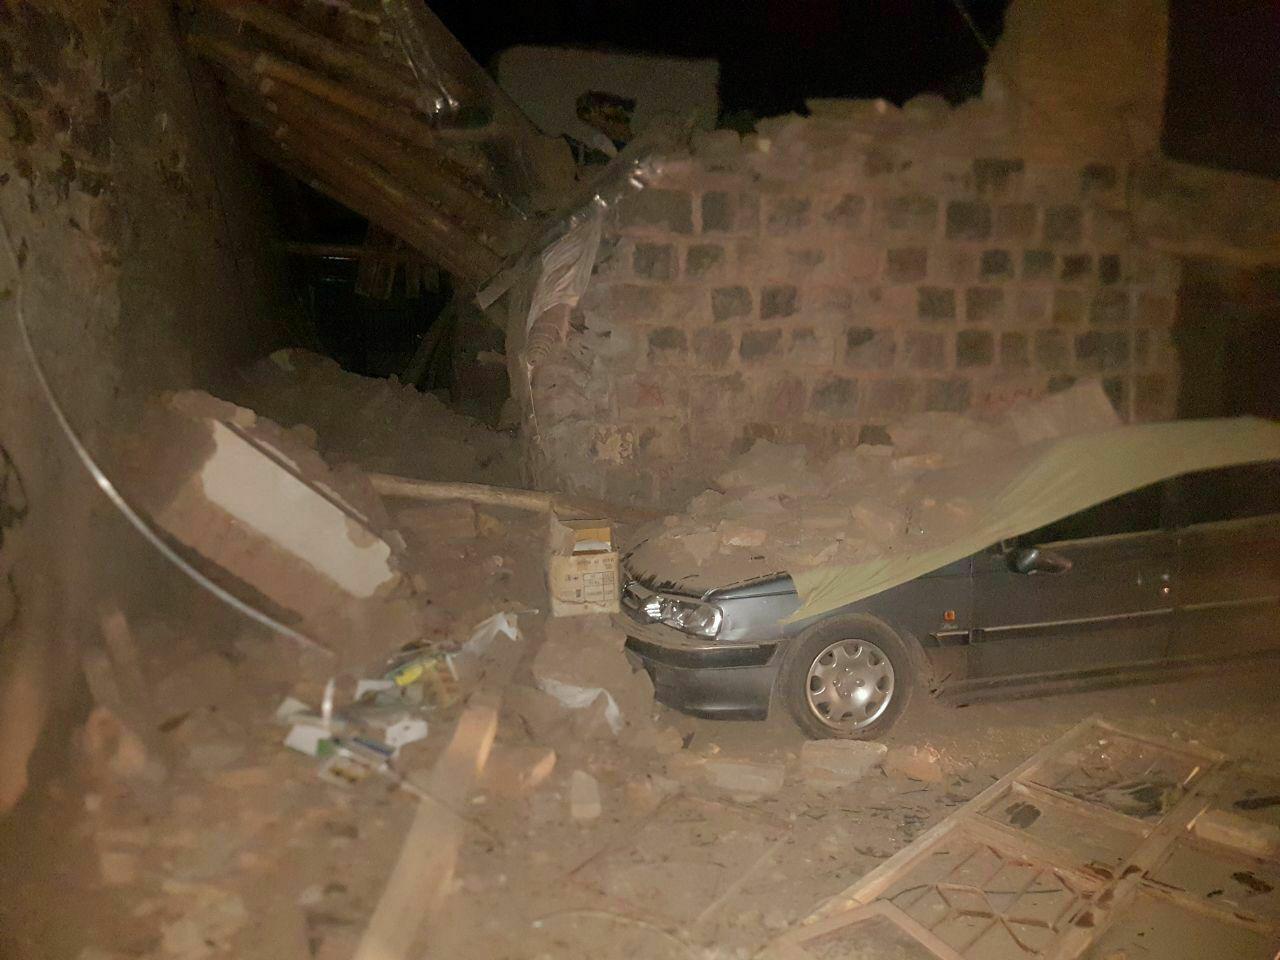 آخرین گزارش هلال احمر از زلزله آذربایجان شرقی